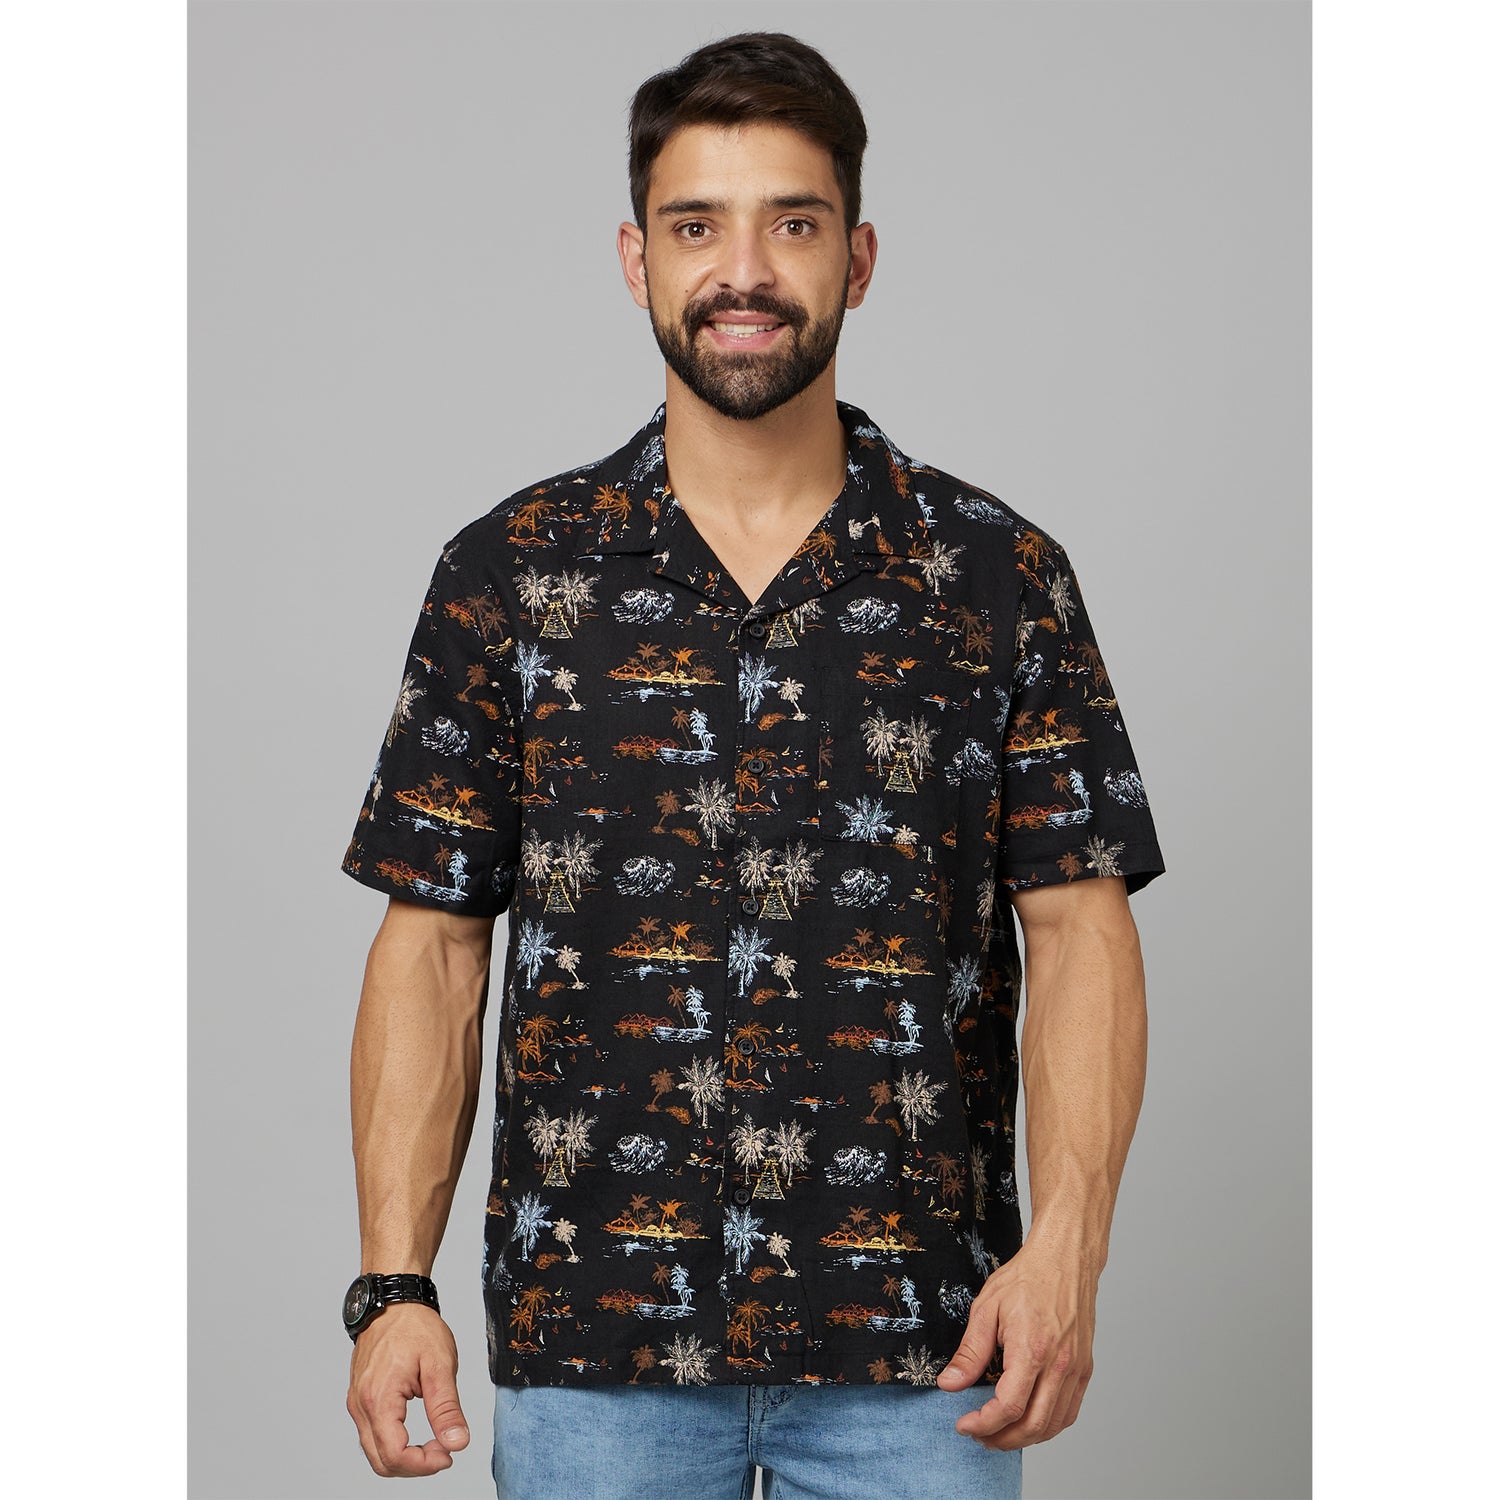 Black Classic Tropical Printed Cuban Collar Cotton Casual Shirt (DAPLAYA)